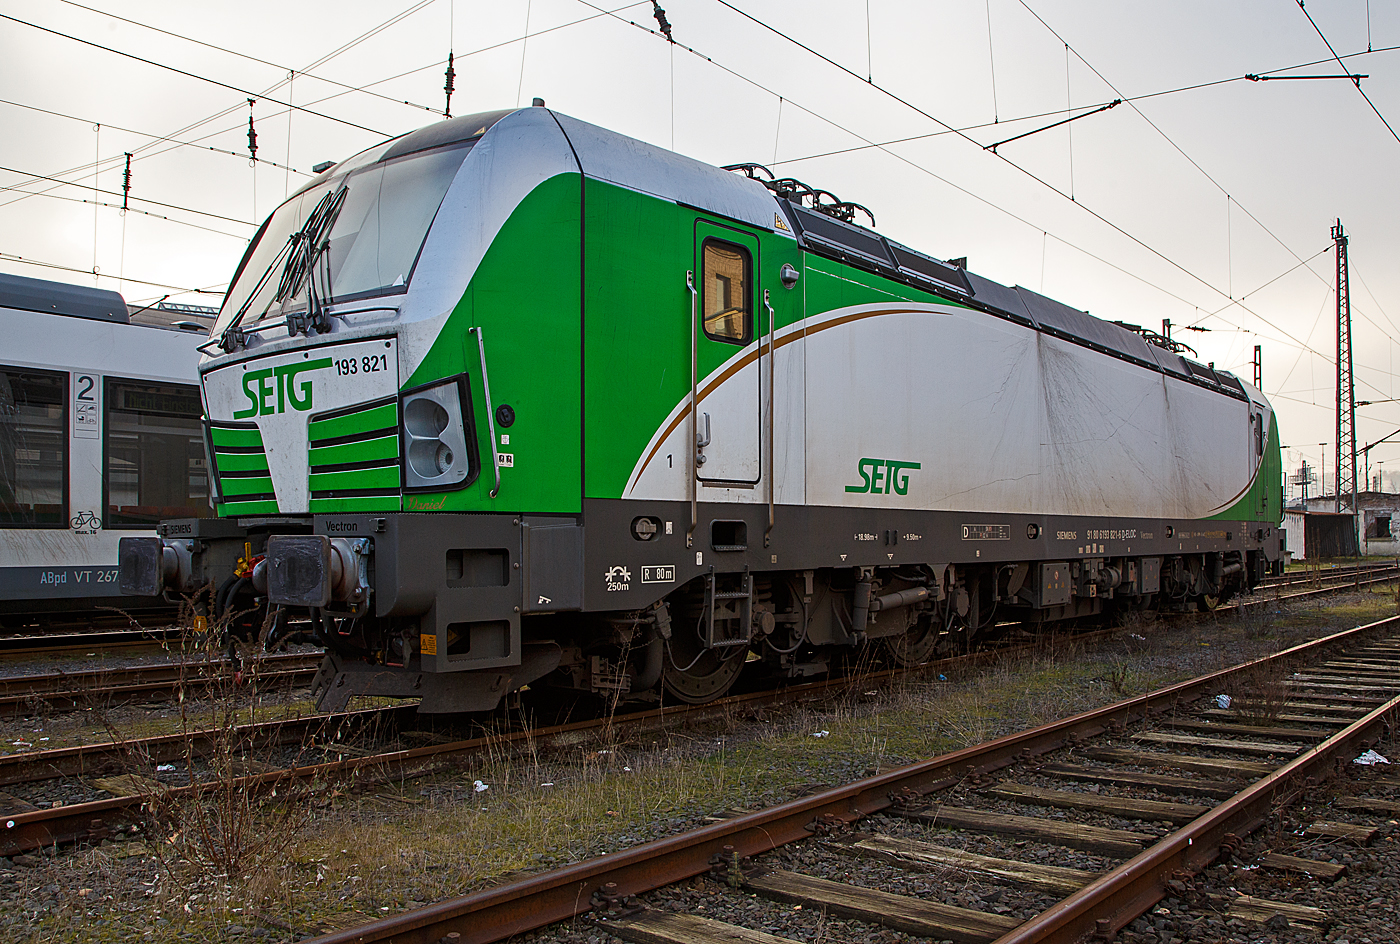 Die an die SETG - Salzburger Eisenbahn TransportLogistik GmbH vermietete Vectron MS 193 821 „Daniel“ (91 80 6193 821-6 D-ELOC) der European Locomotive Leasing (Wien), ex Siemens Rail Systems 91 80 6193 821-6 D-PCW, ist am 15.12.2022 beim Hbf Siegen abgestellt.

Die Siemens Vectron MS wurde 2013 von Siemens Mobilitiy in Mnchen-Allach unter der Fabriknummer 21830 gebaut. Die Vectron MS mit einer Leistung von 6.4 MW fr 200 km/h ist fr Deutschland, sterreich, Ungarn, Slowakei und Tschechien (D/A/H/SK/CZ). Zulassungen fr Polen und Rumnien (PL/RO) sind wohl vorgesehen/vorbereitet, aber noch durchgestrichen und nicht erteilt.

Die Vectron war erst ein Miet-/Vorfhrlok der Siemens Rail Systems, Mnchen, eingestellt als 91 80 6193 821-6 D-PCW, im September 2013 ging sie kurz in die Trkei, kam aber 2014 wieder zurck. 2015/16 ging sie an die European Locomotive Leasing (Wien).
